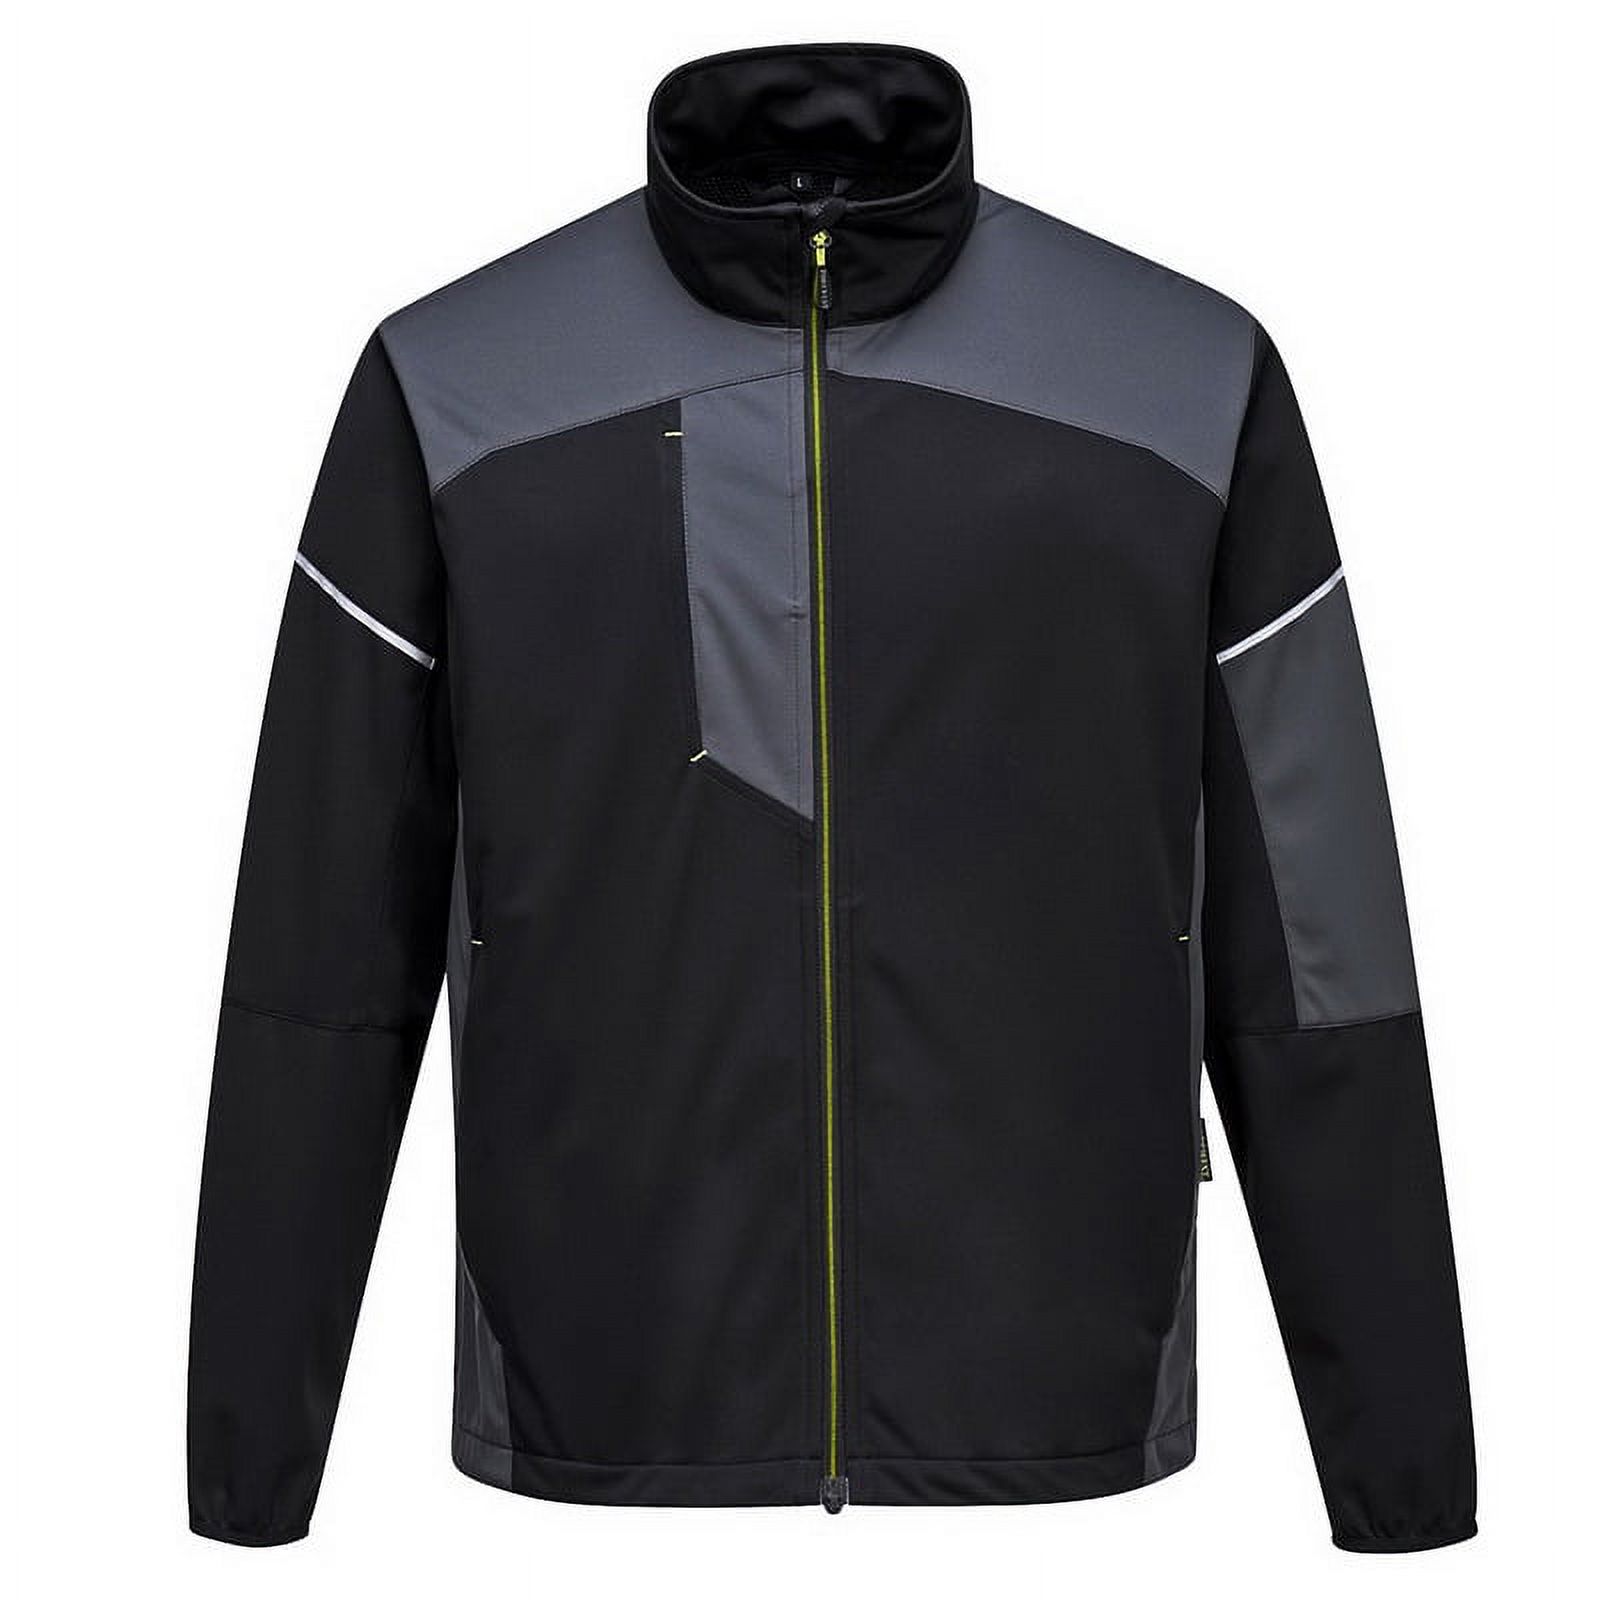 Portwest T620 PW3 Flexible Shell Workwear Jacket Black, Large - image 2 of 2